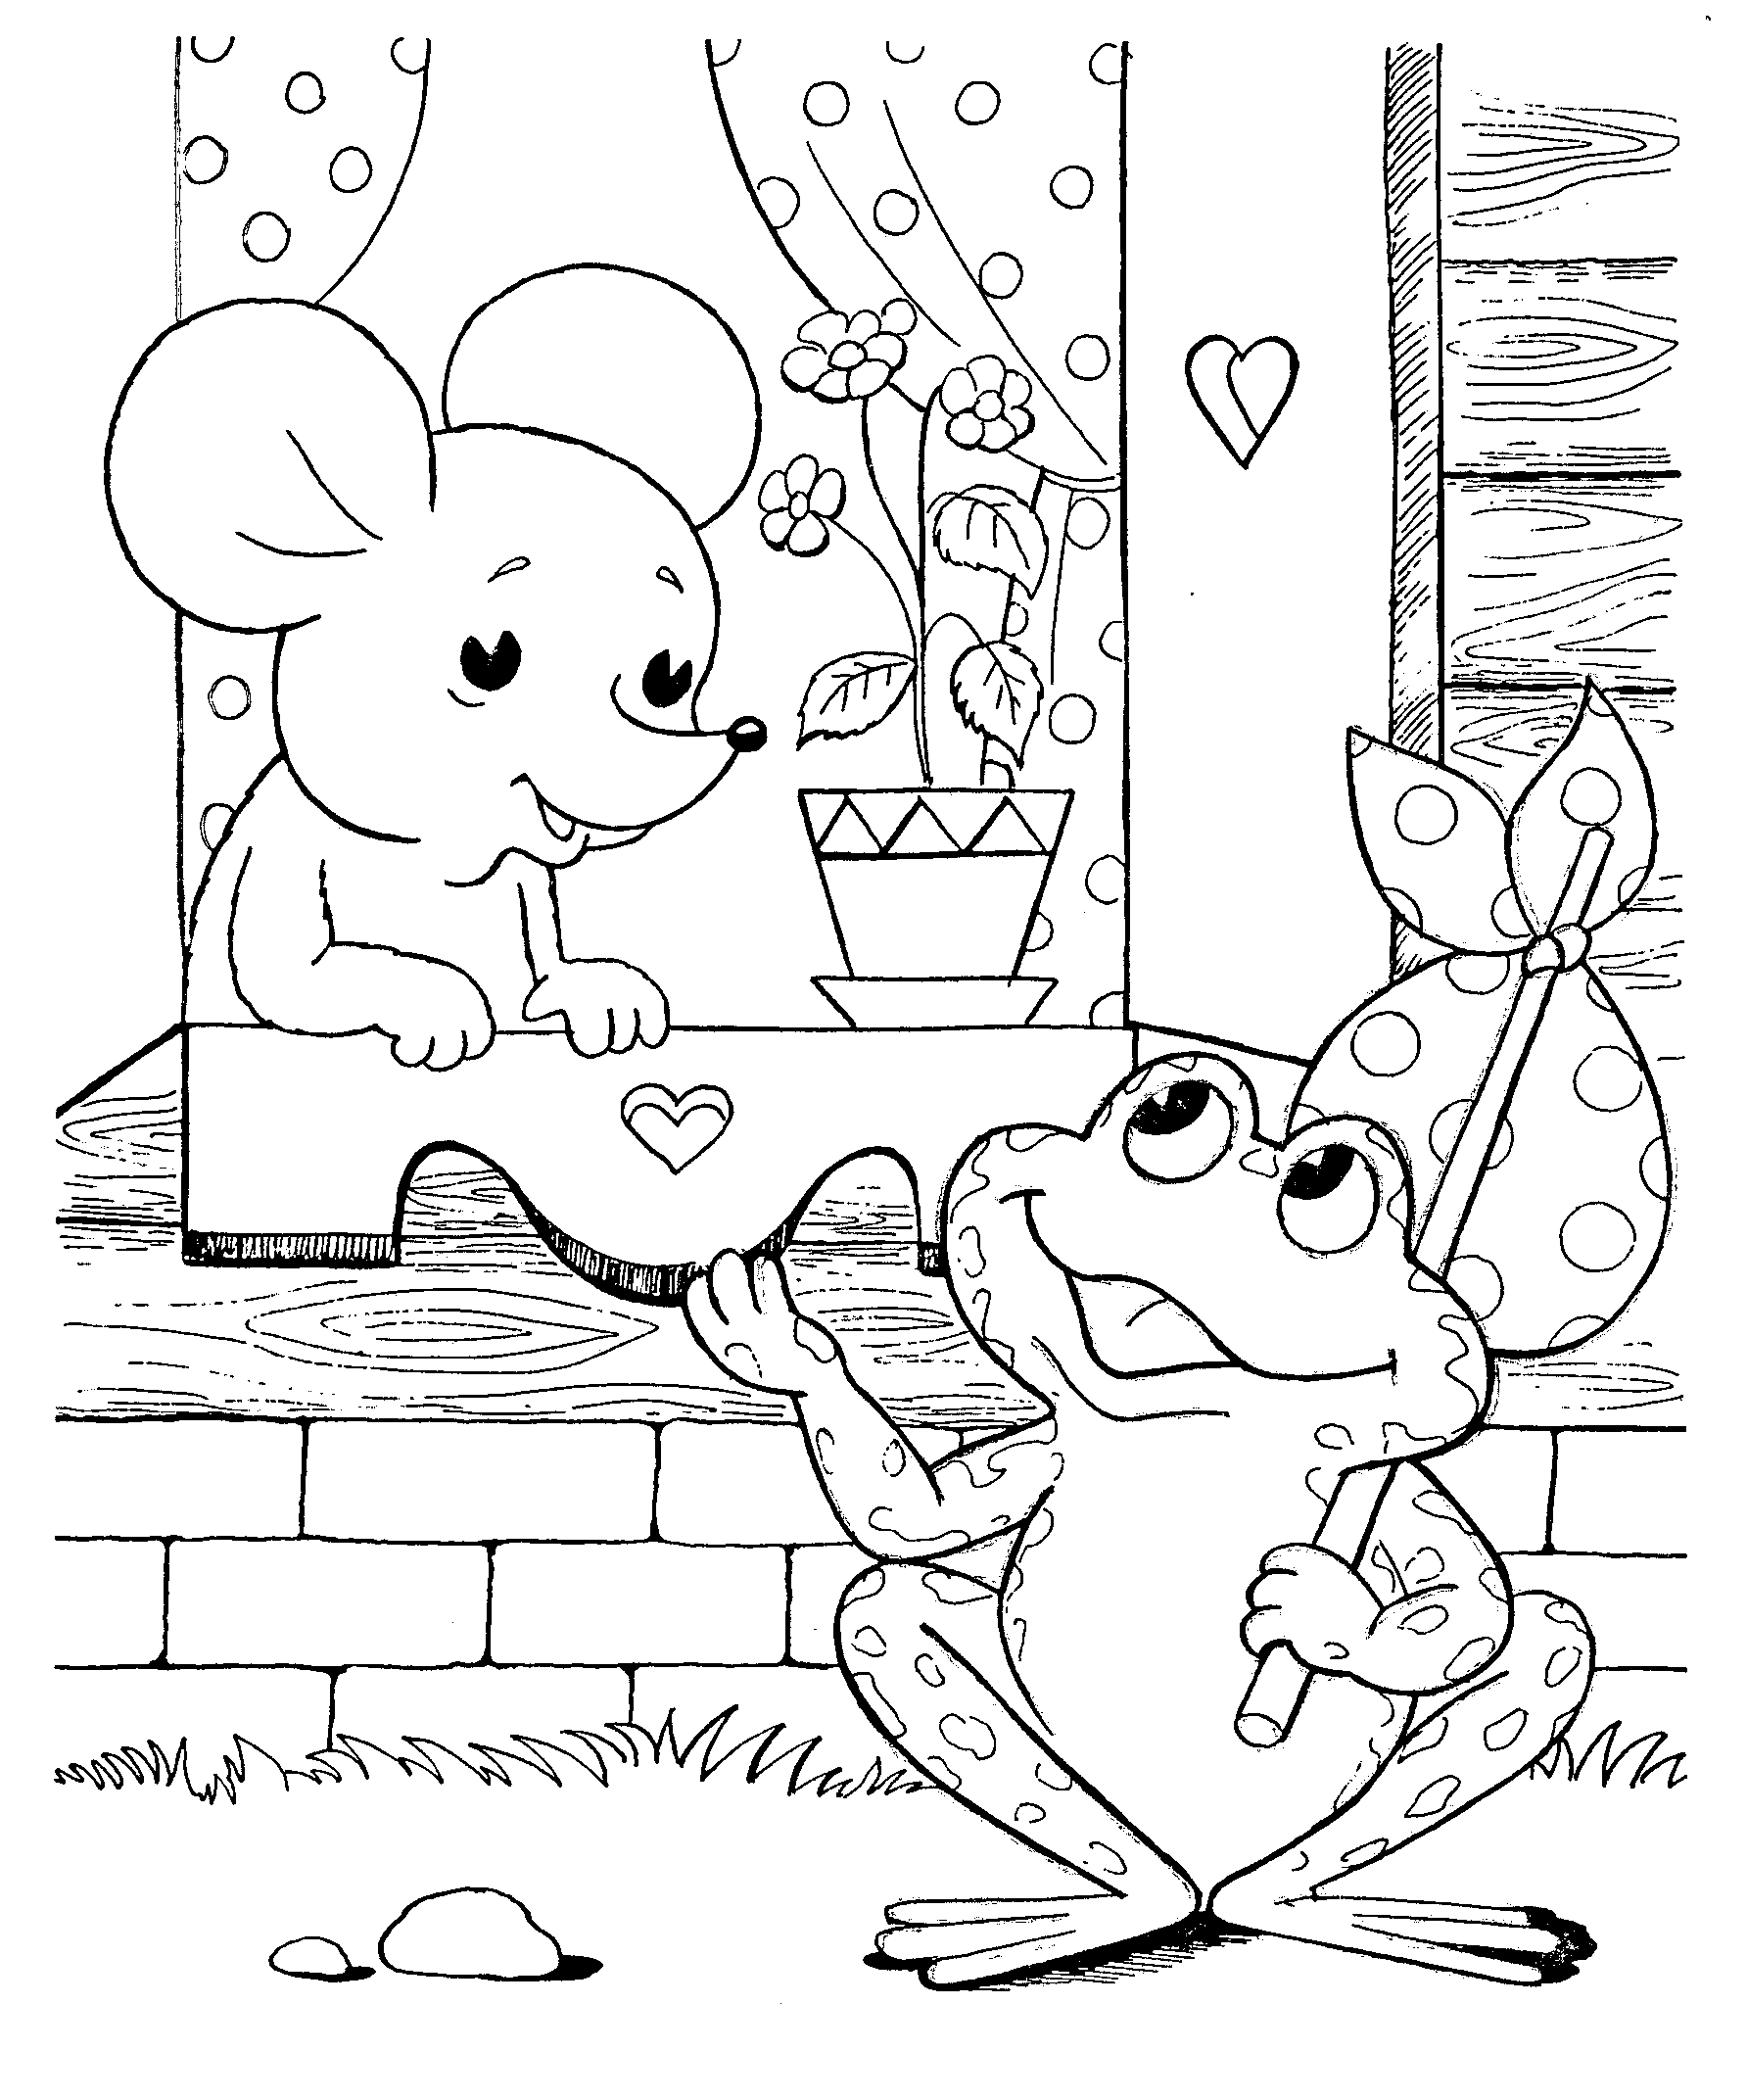 Мышка норушка и лягушка квакушка